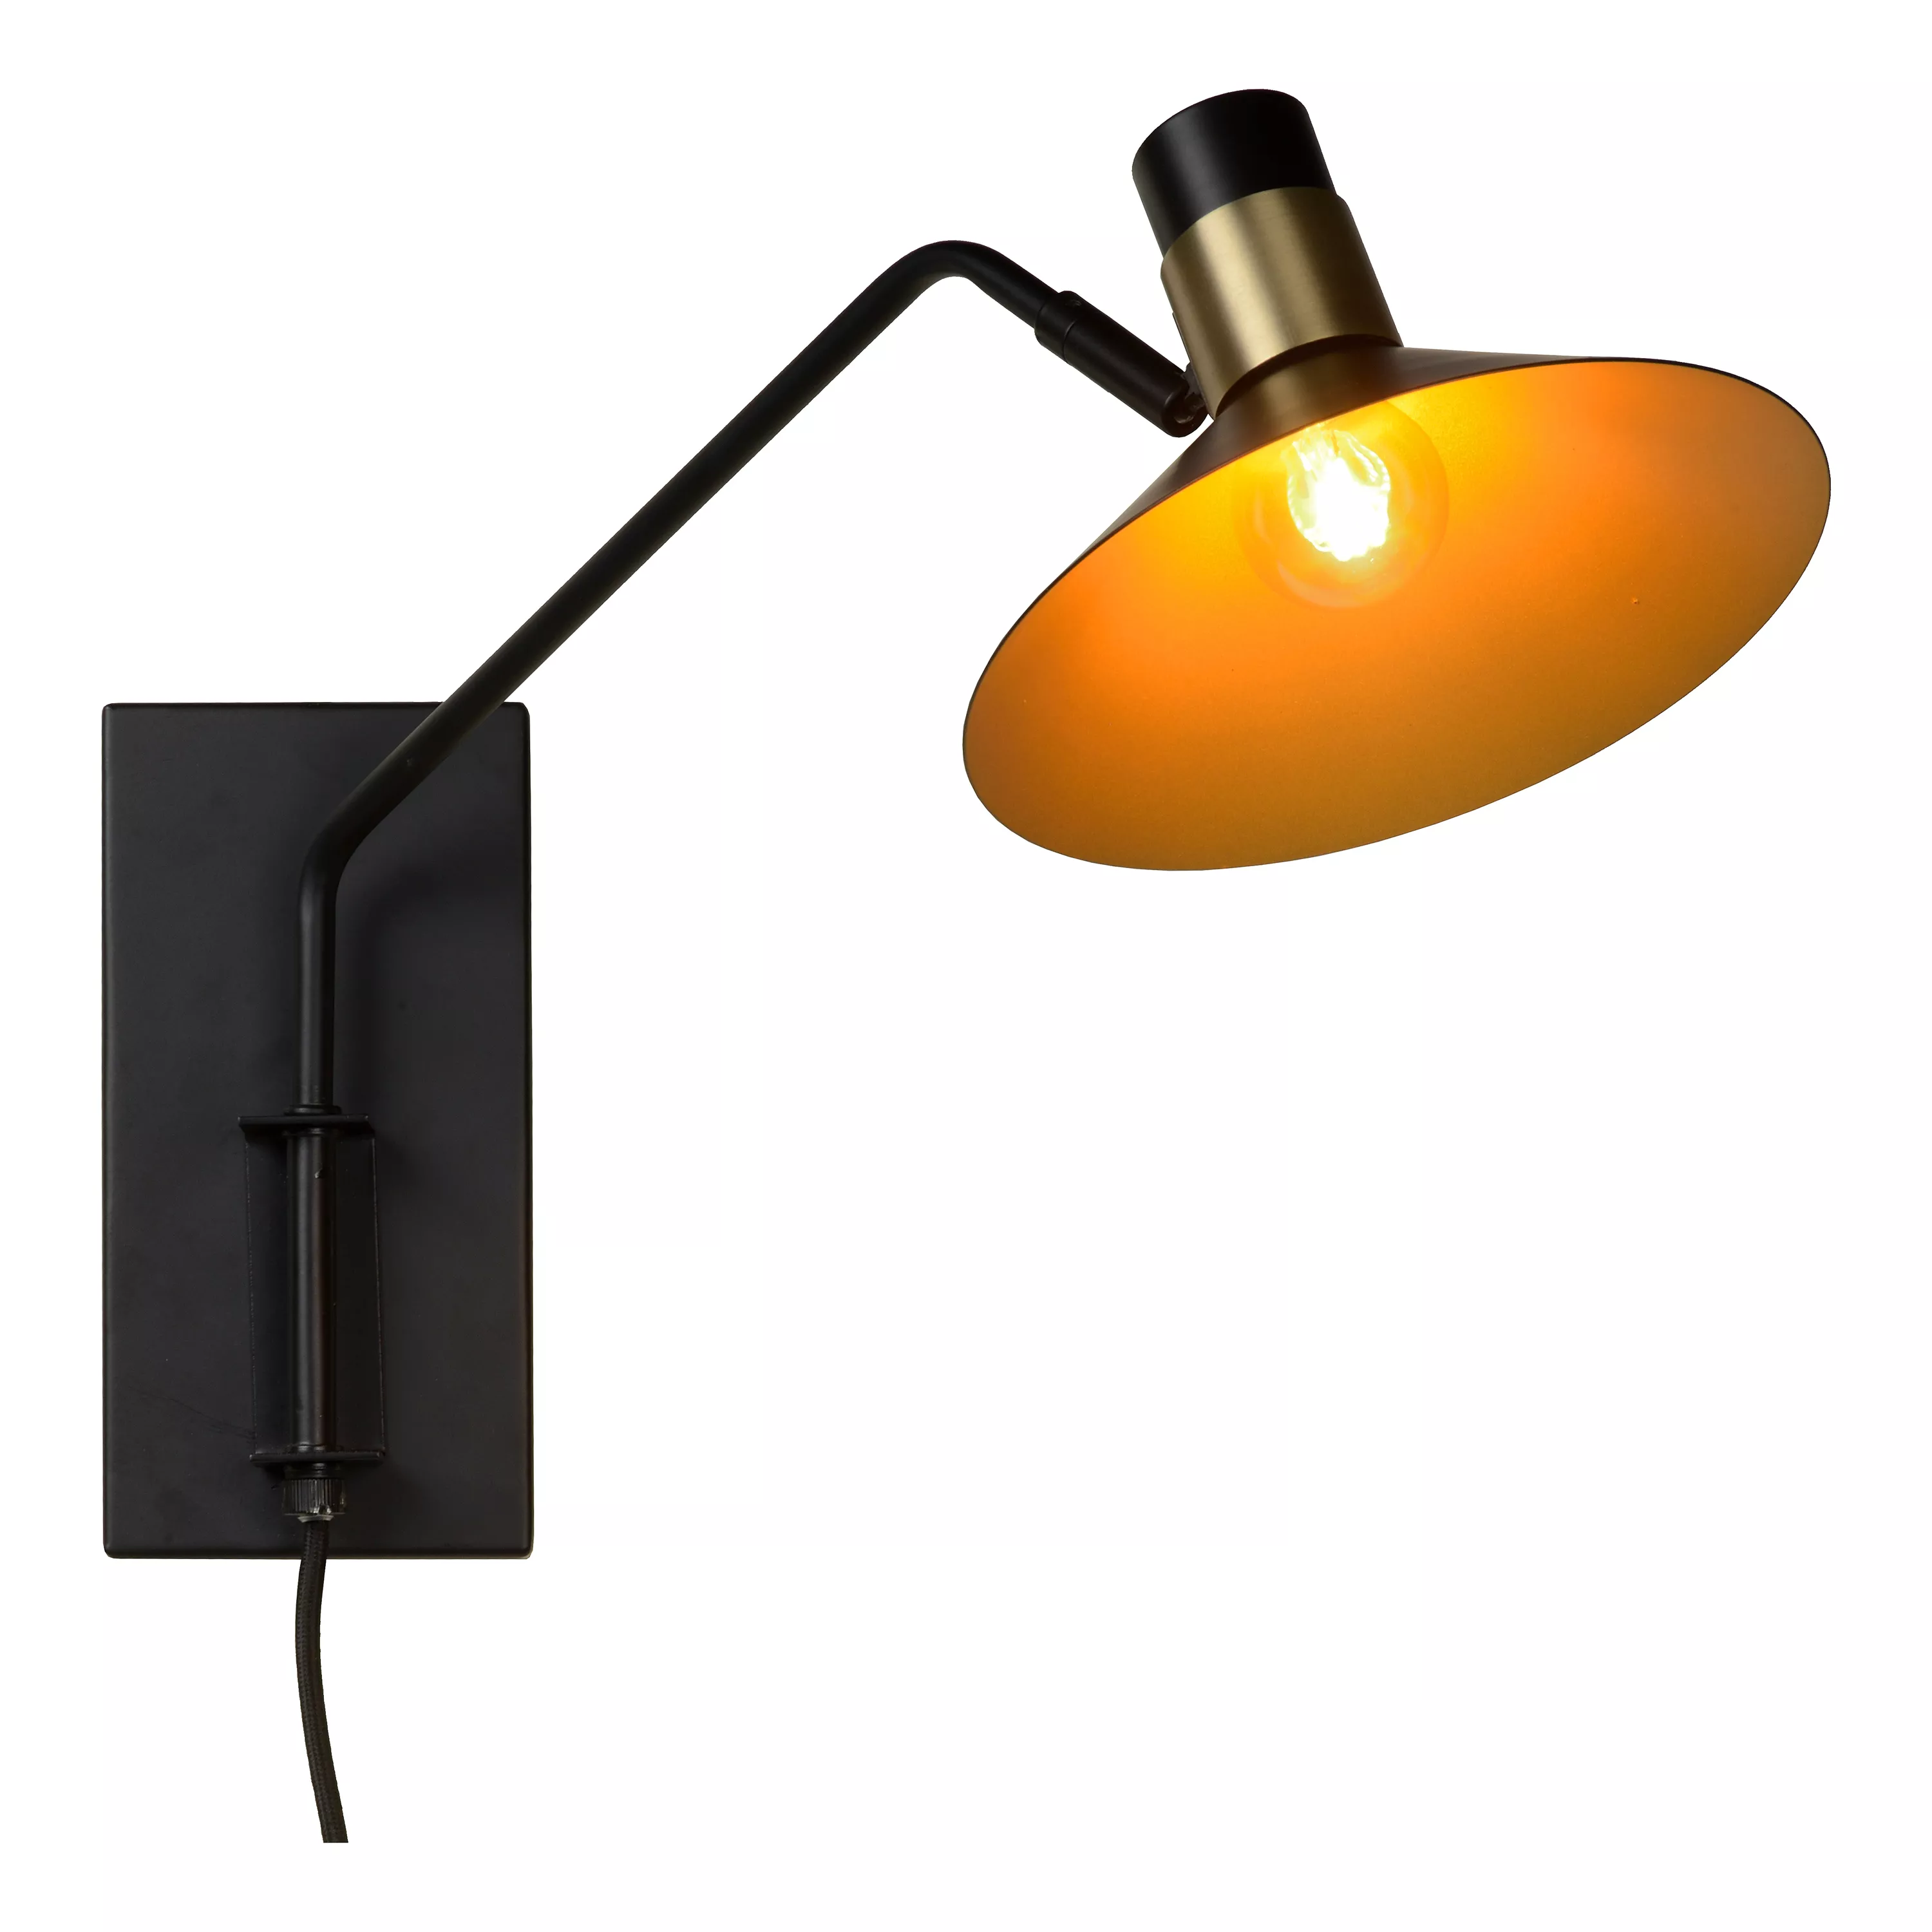 Nástěnné svítidlo Pepijn v černé barvě s mosazí, vhodné do obývacího pokoje nebo ložnice.